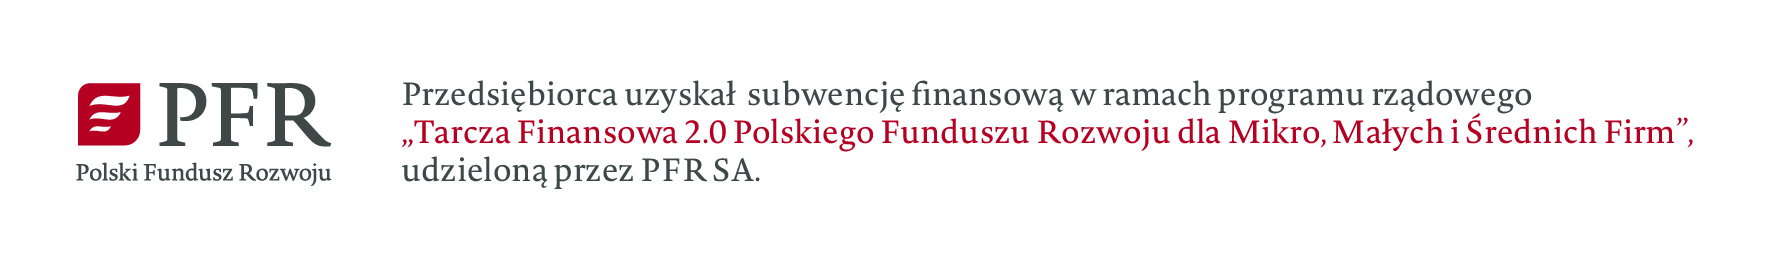 Przedsiębiorca uzyskał subwencję finansową w ramach programu rządowego Tarcza Finansowa 2.0 Polskiego Funduszu Rozwoju dla Mikro, Małych i Średnich Firm, udzieloną przez PFR SA.